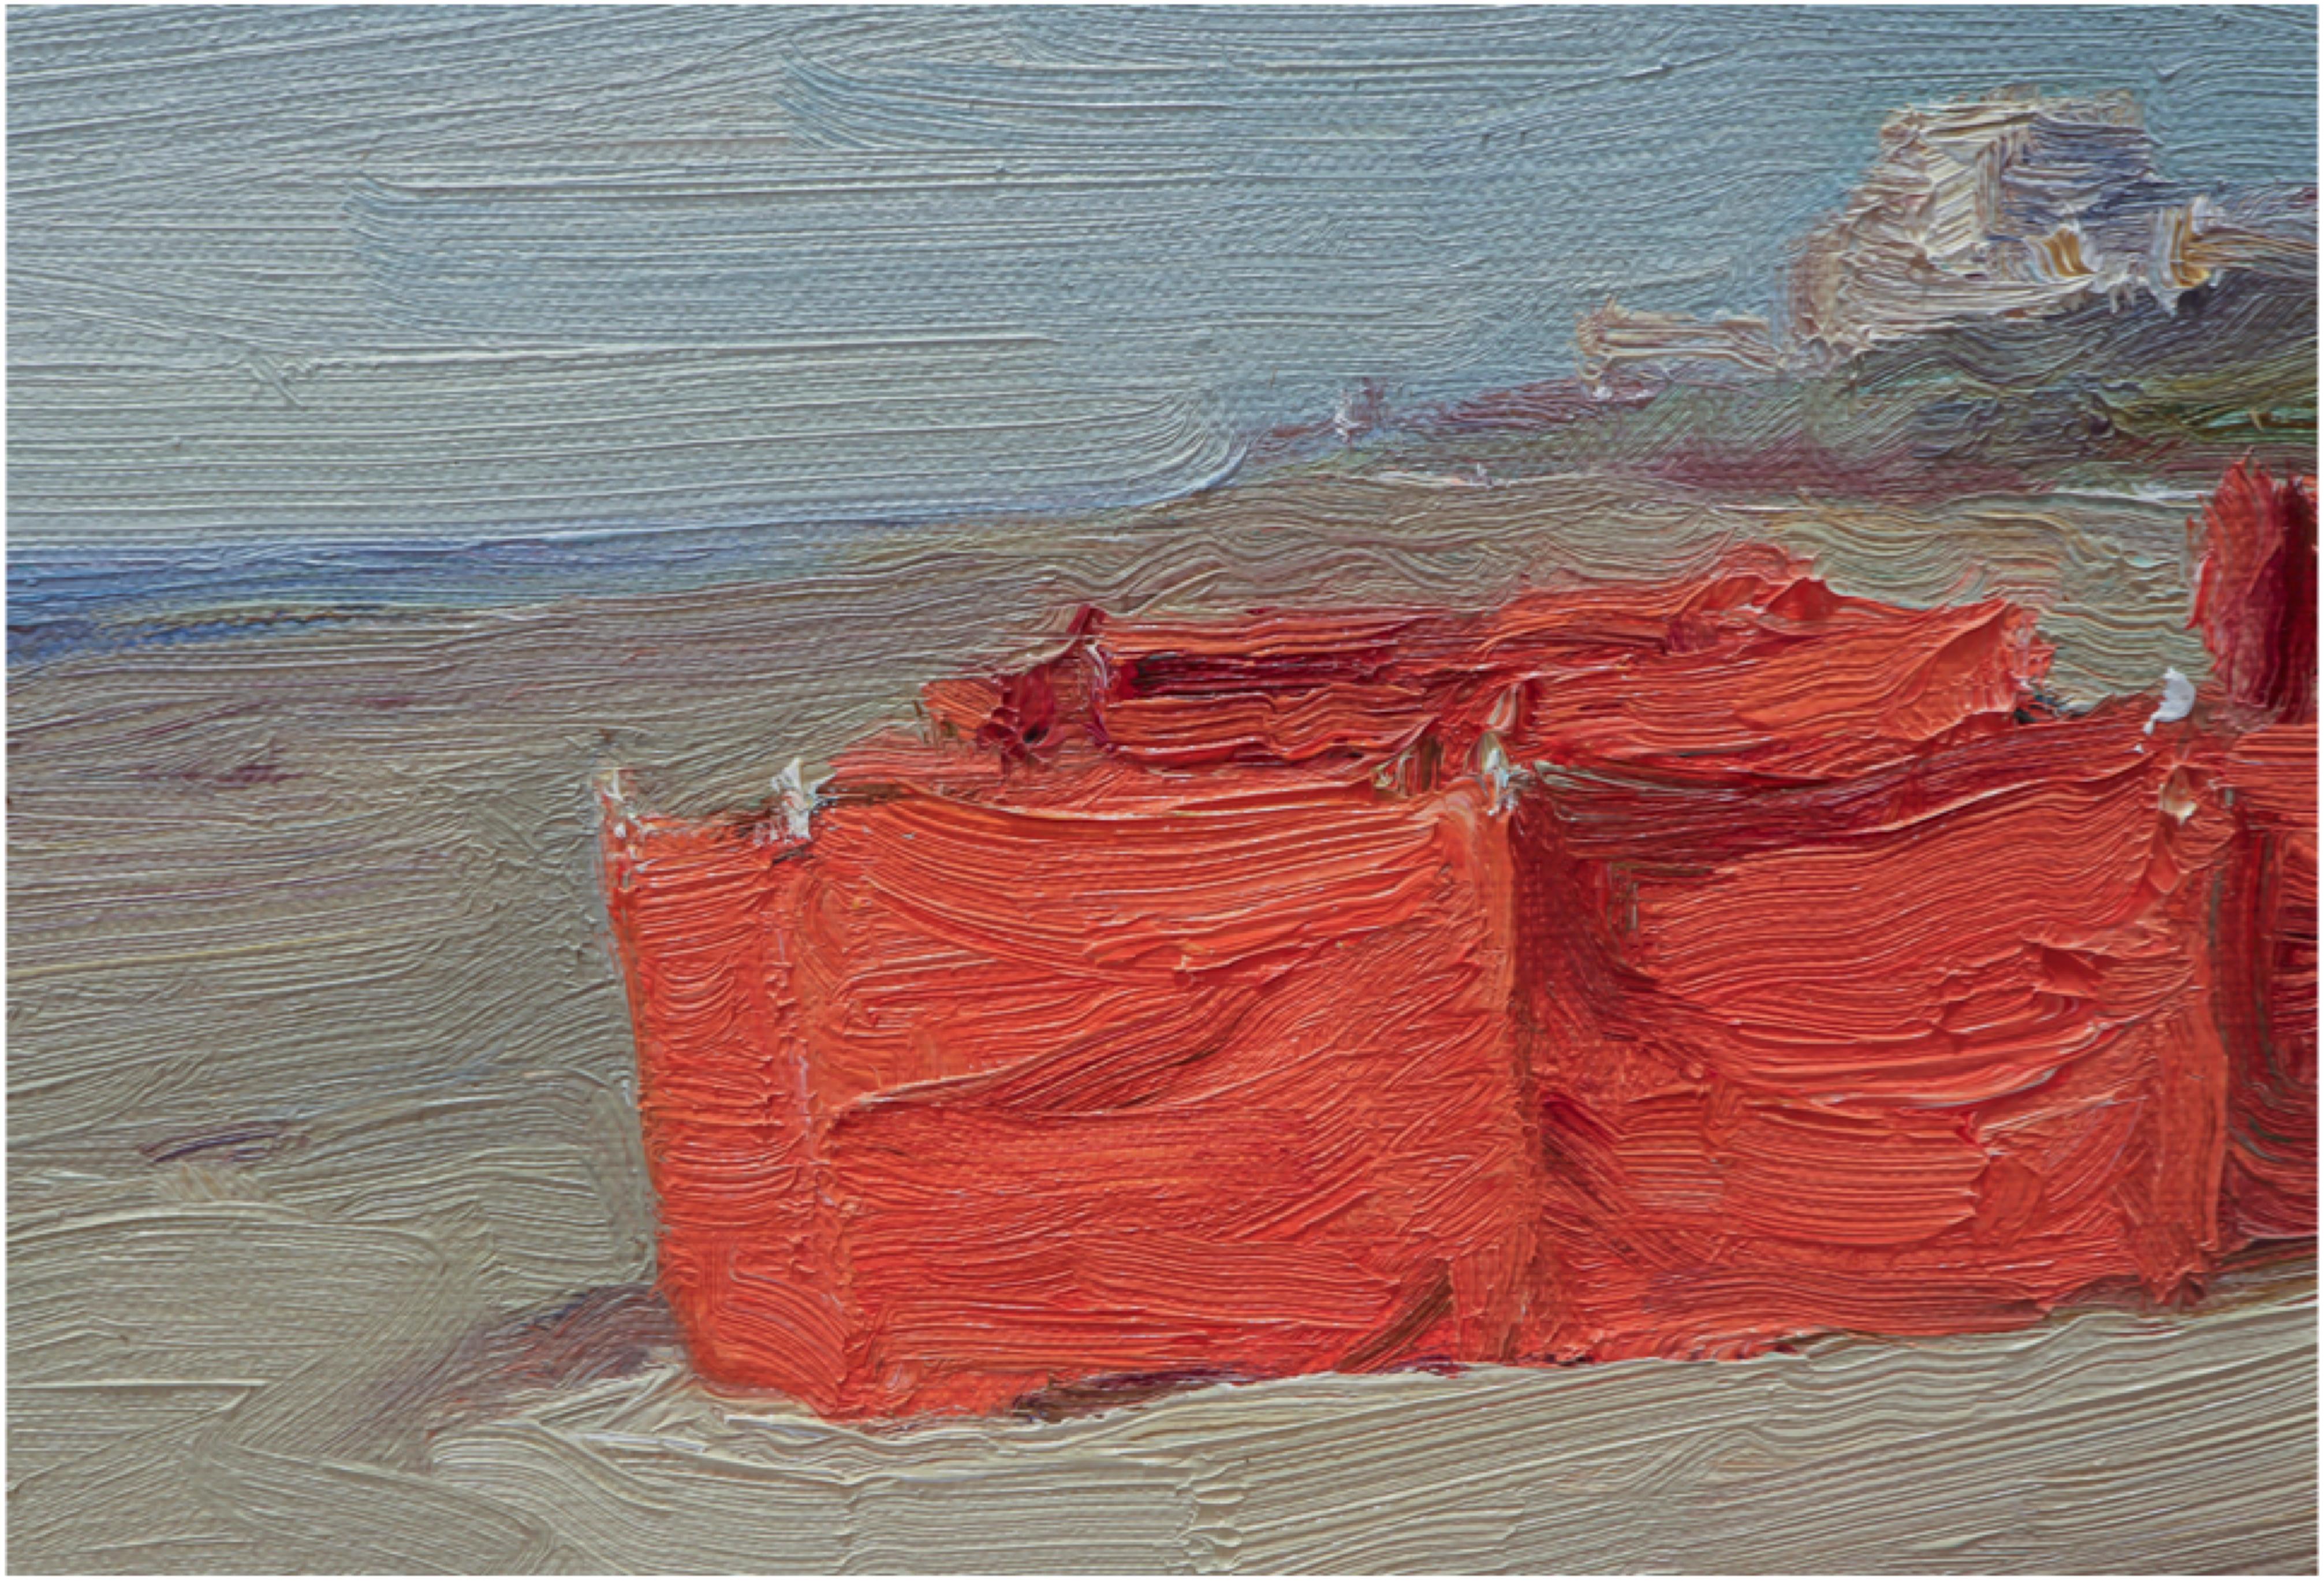 André Krigar né en 1952 à Berlin. Est un peintre réaliste allemand moderne. Il a étudié la peinture à la Hochschule der Künste de Berlin. Depuis 1992, il fait partie des 